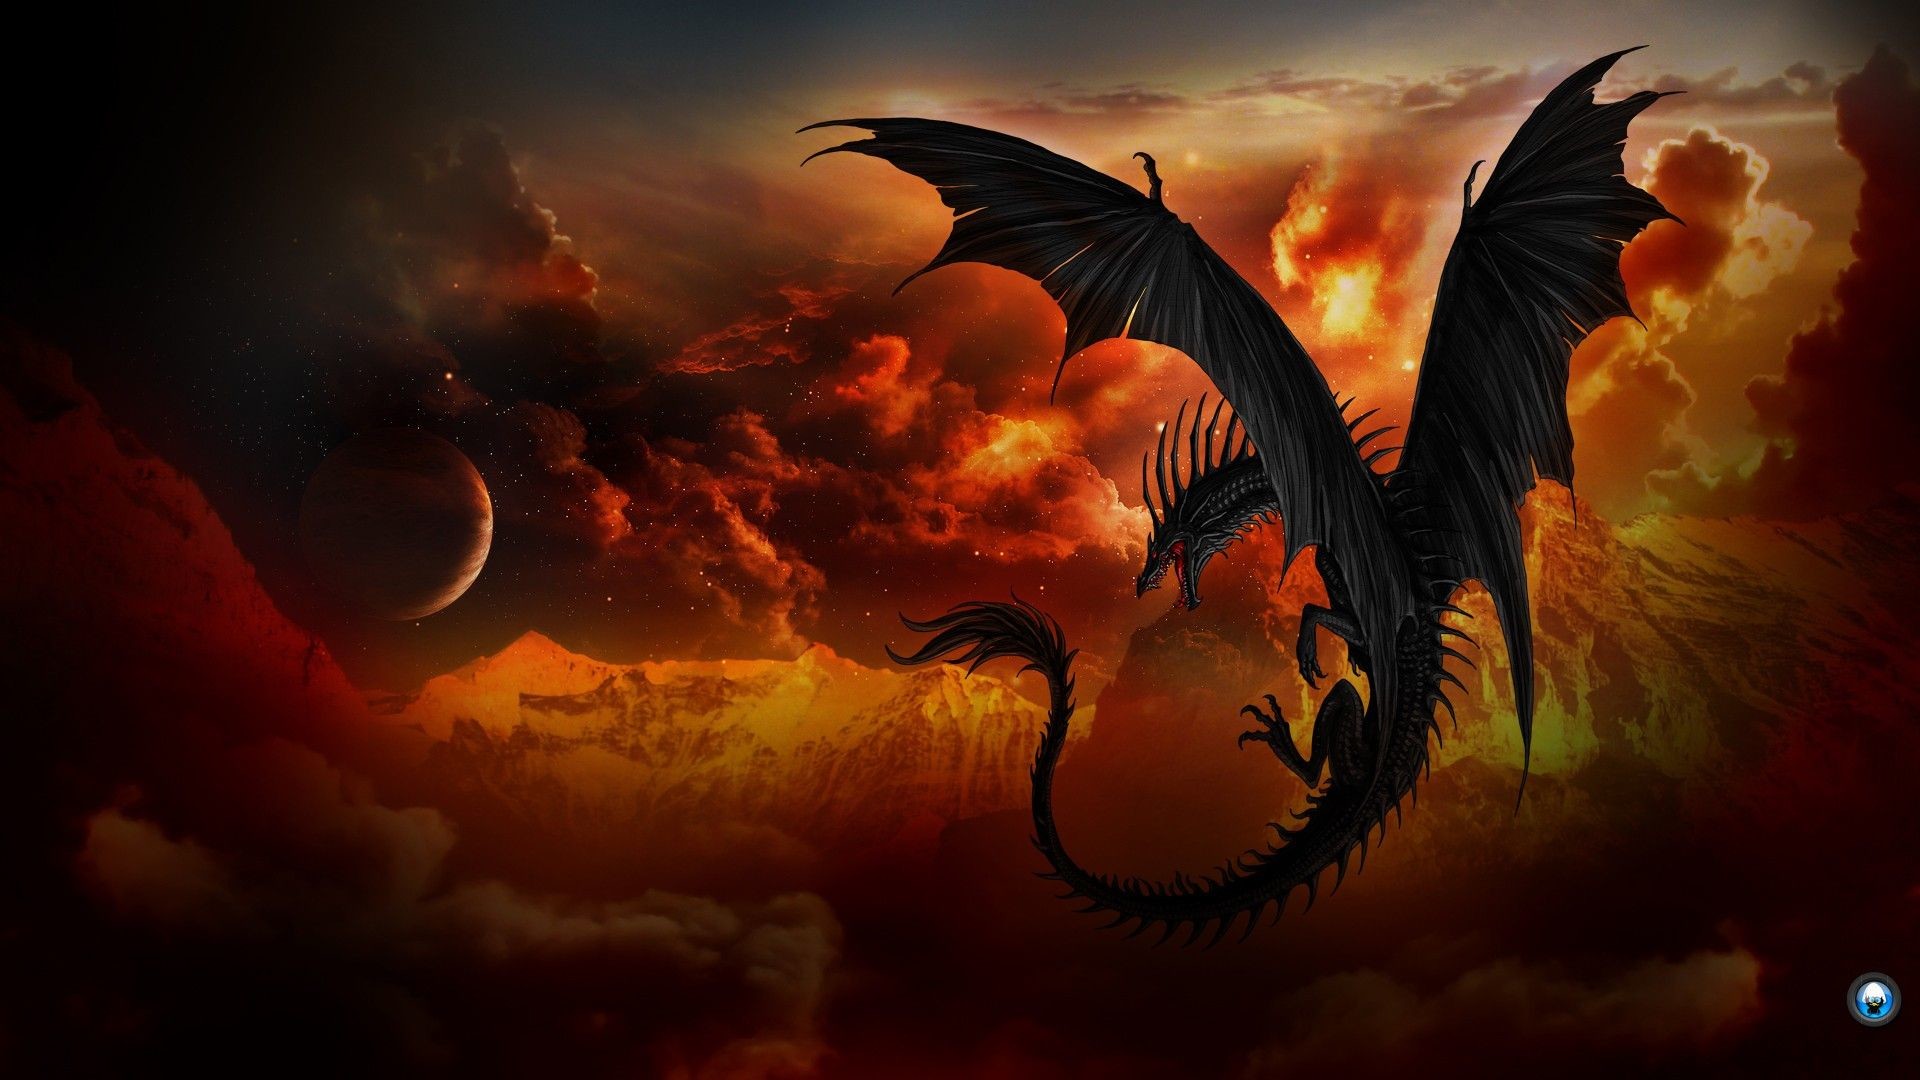 1920x1080  Dragon background Â·â  Download free amazing full HD backgrounds  for .